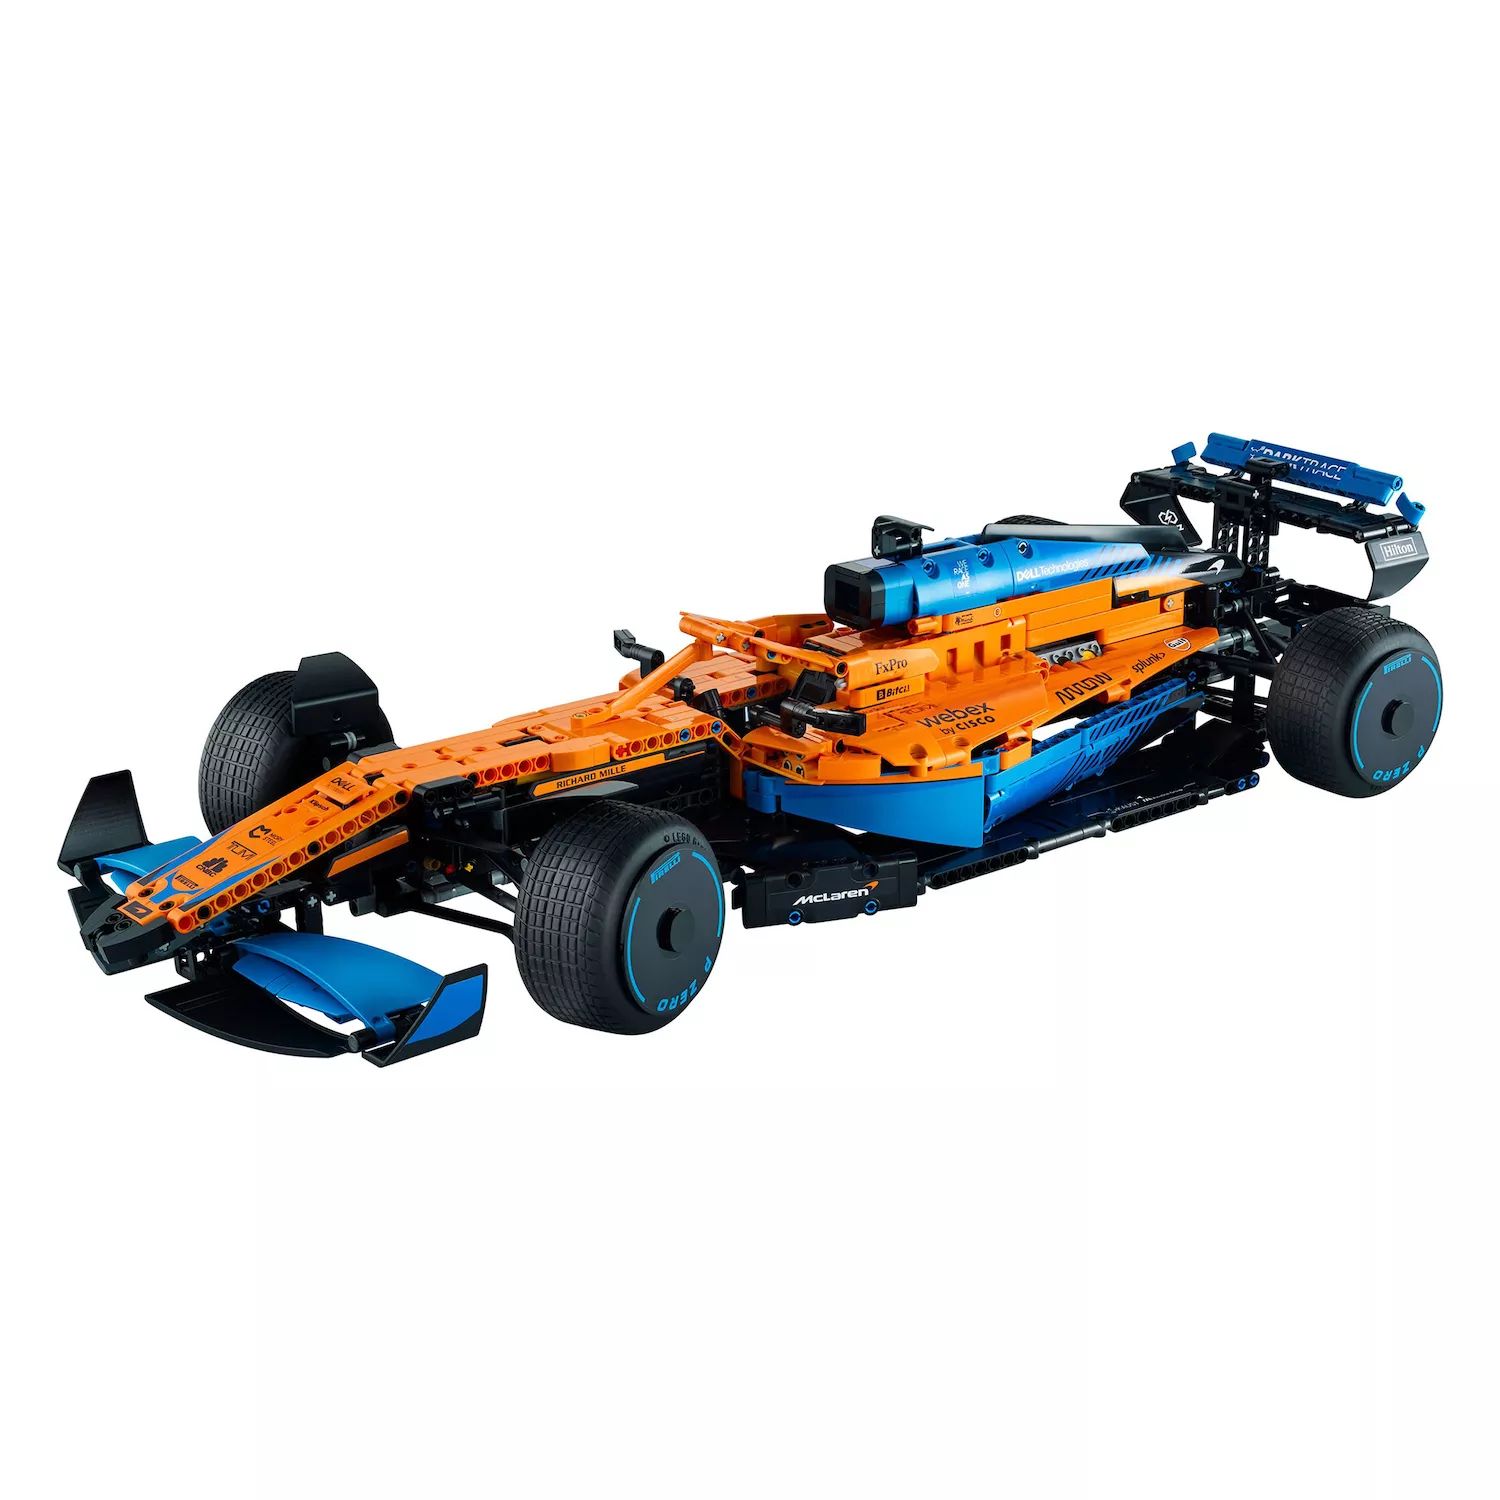 Комплект для сборки модели LEGO Technic McLaren Formula 1 Race Car 42141 (1432 детали) LEGO конструктор mclaren formula 1 от китайского производителя совместим с lego technic 42141 макларен формула 1